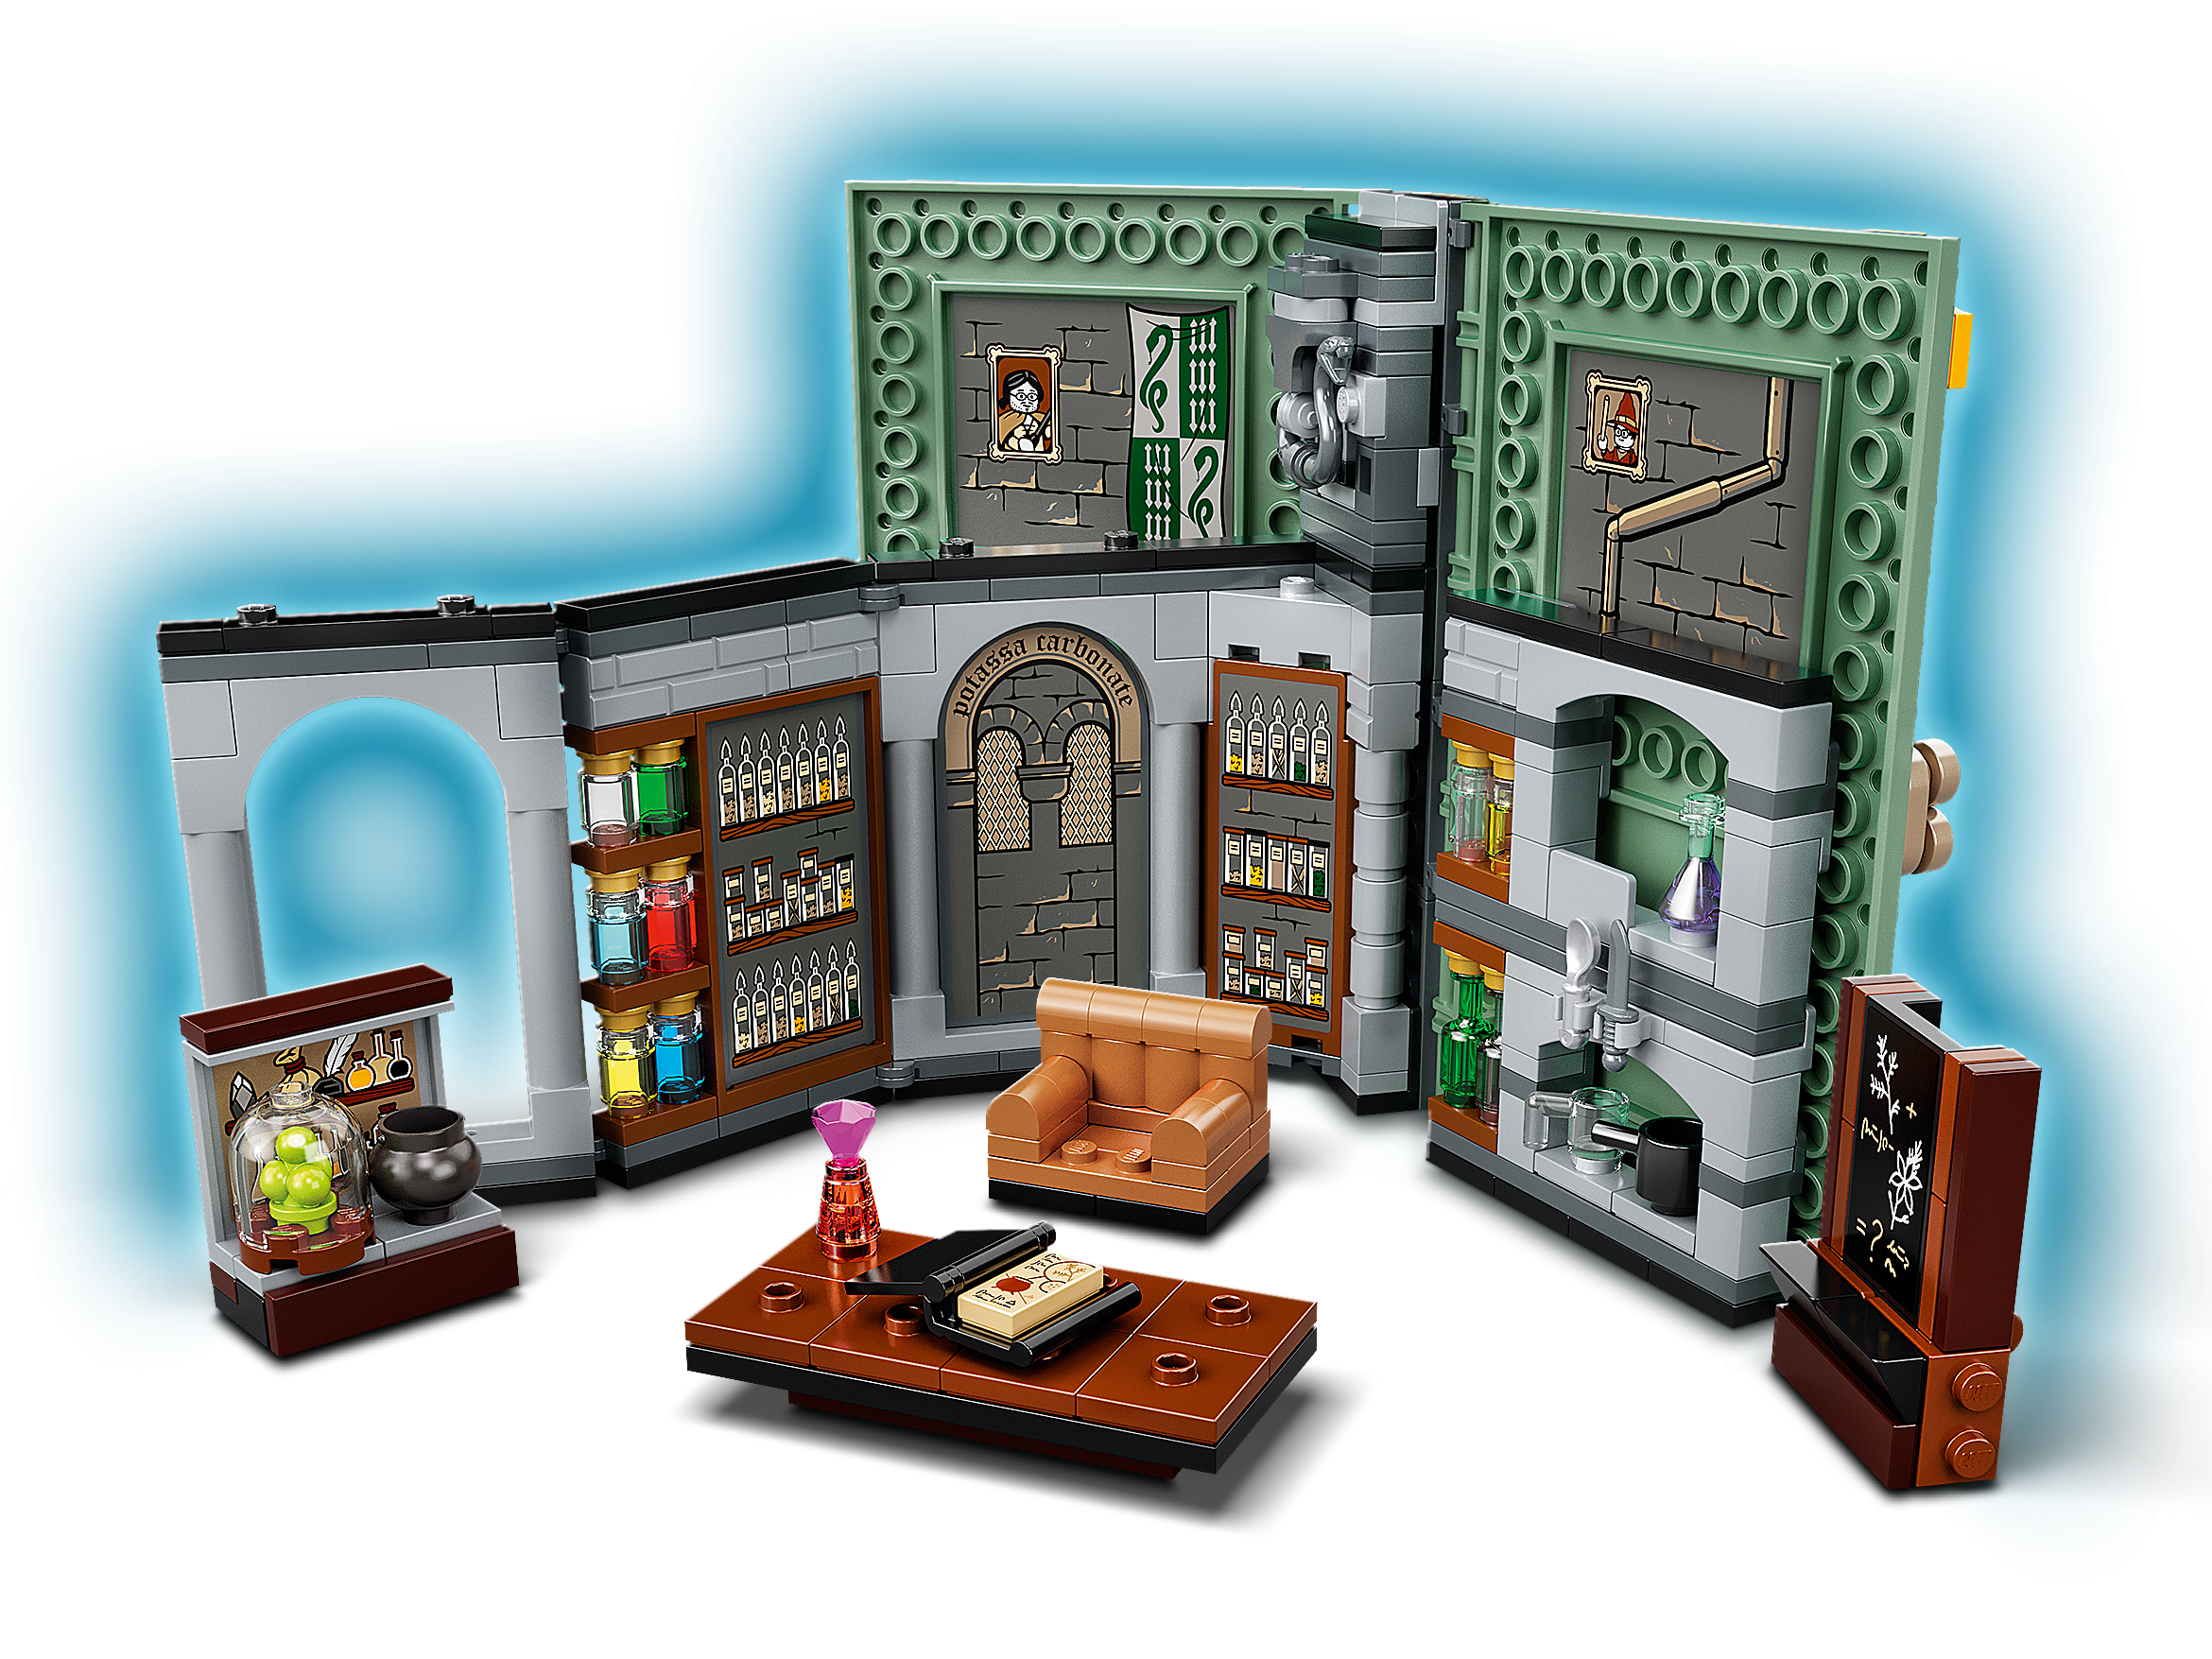 LEGO Harry Potter - Momento Hogwarts: Aula de Poções - 76383 -  superlegalbrinquedos